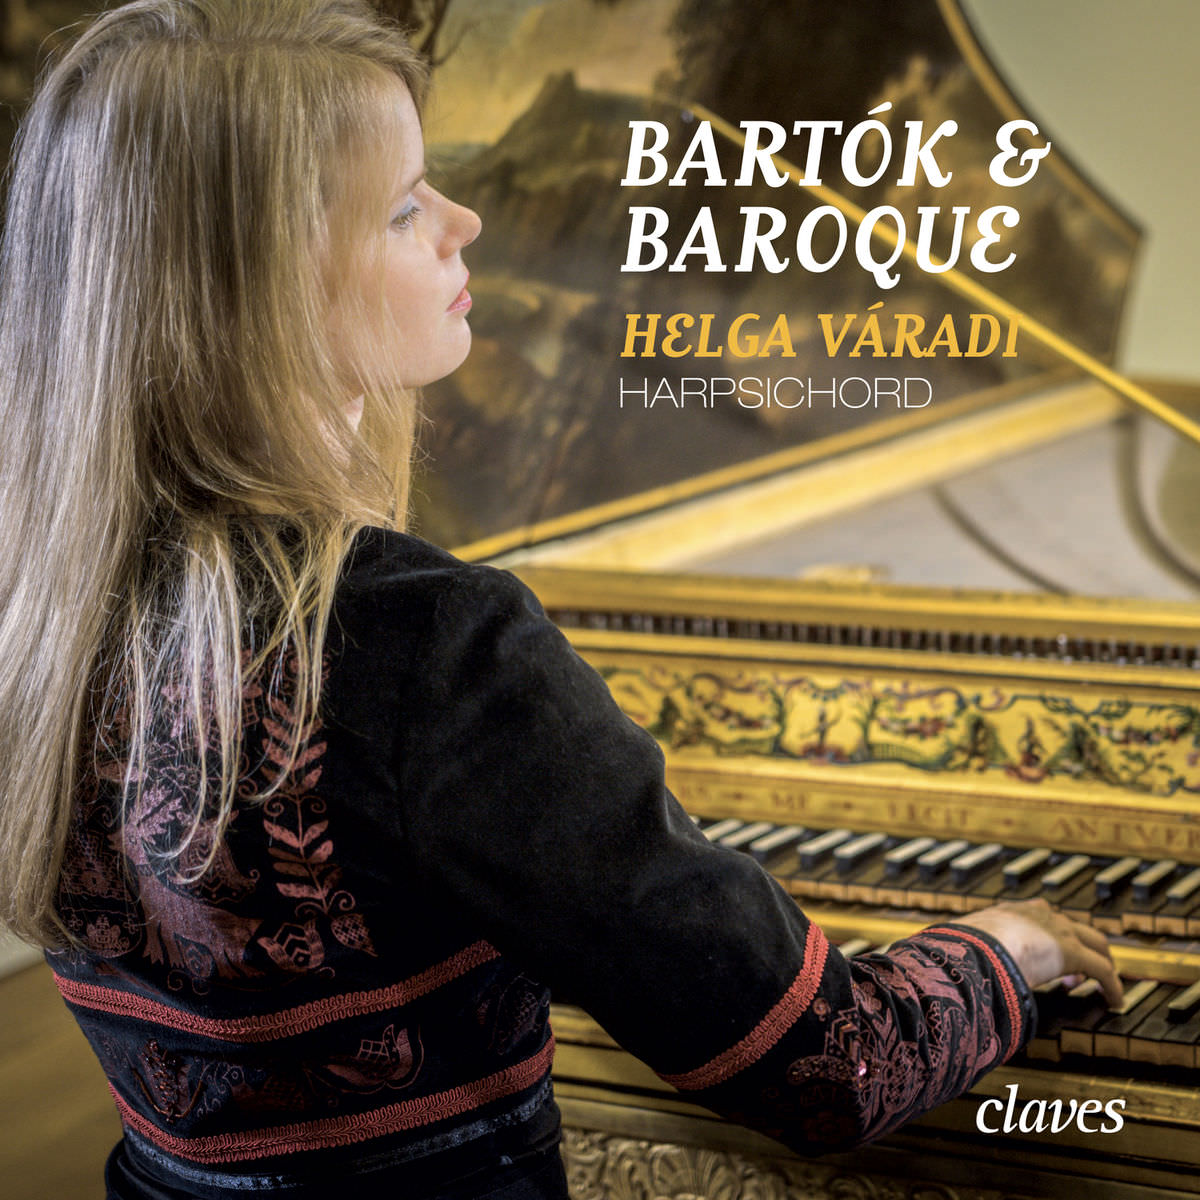 Helga Varadi – Bartok & Baroque (2018) [FLAC 24bit/96kHz]